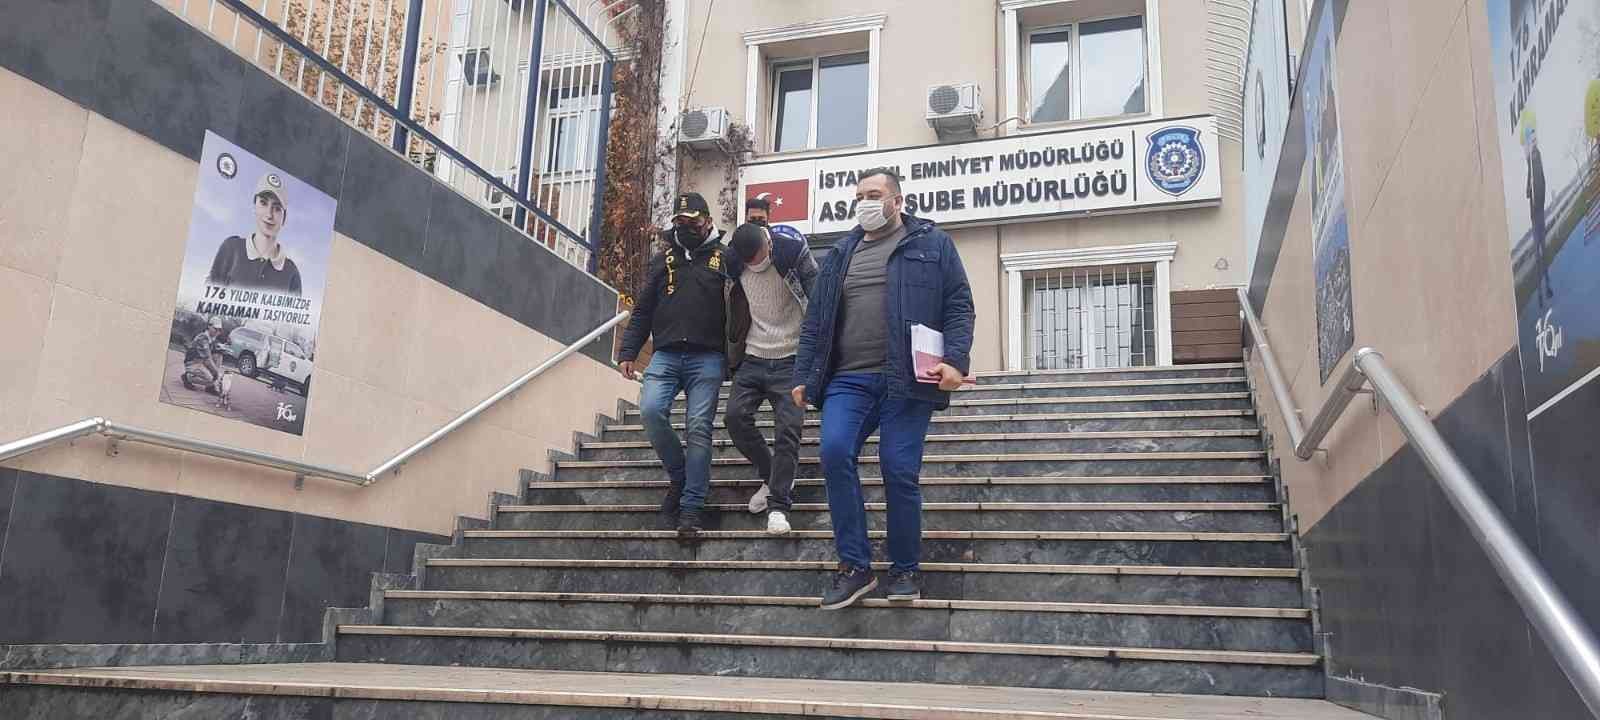 21 bin 500 TL değerinde alkol ve tütün mamulü çalan şahıs yakalandı #istanbul